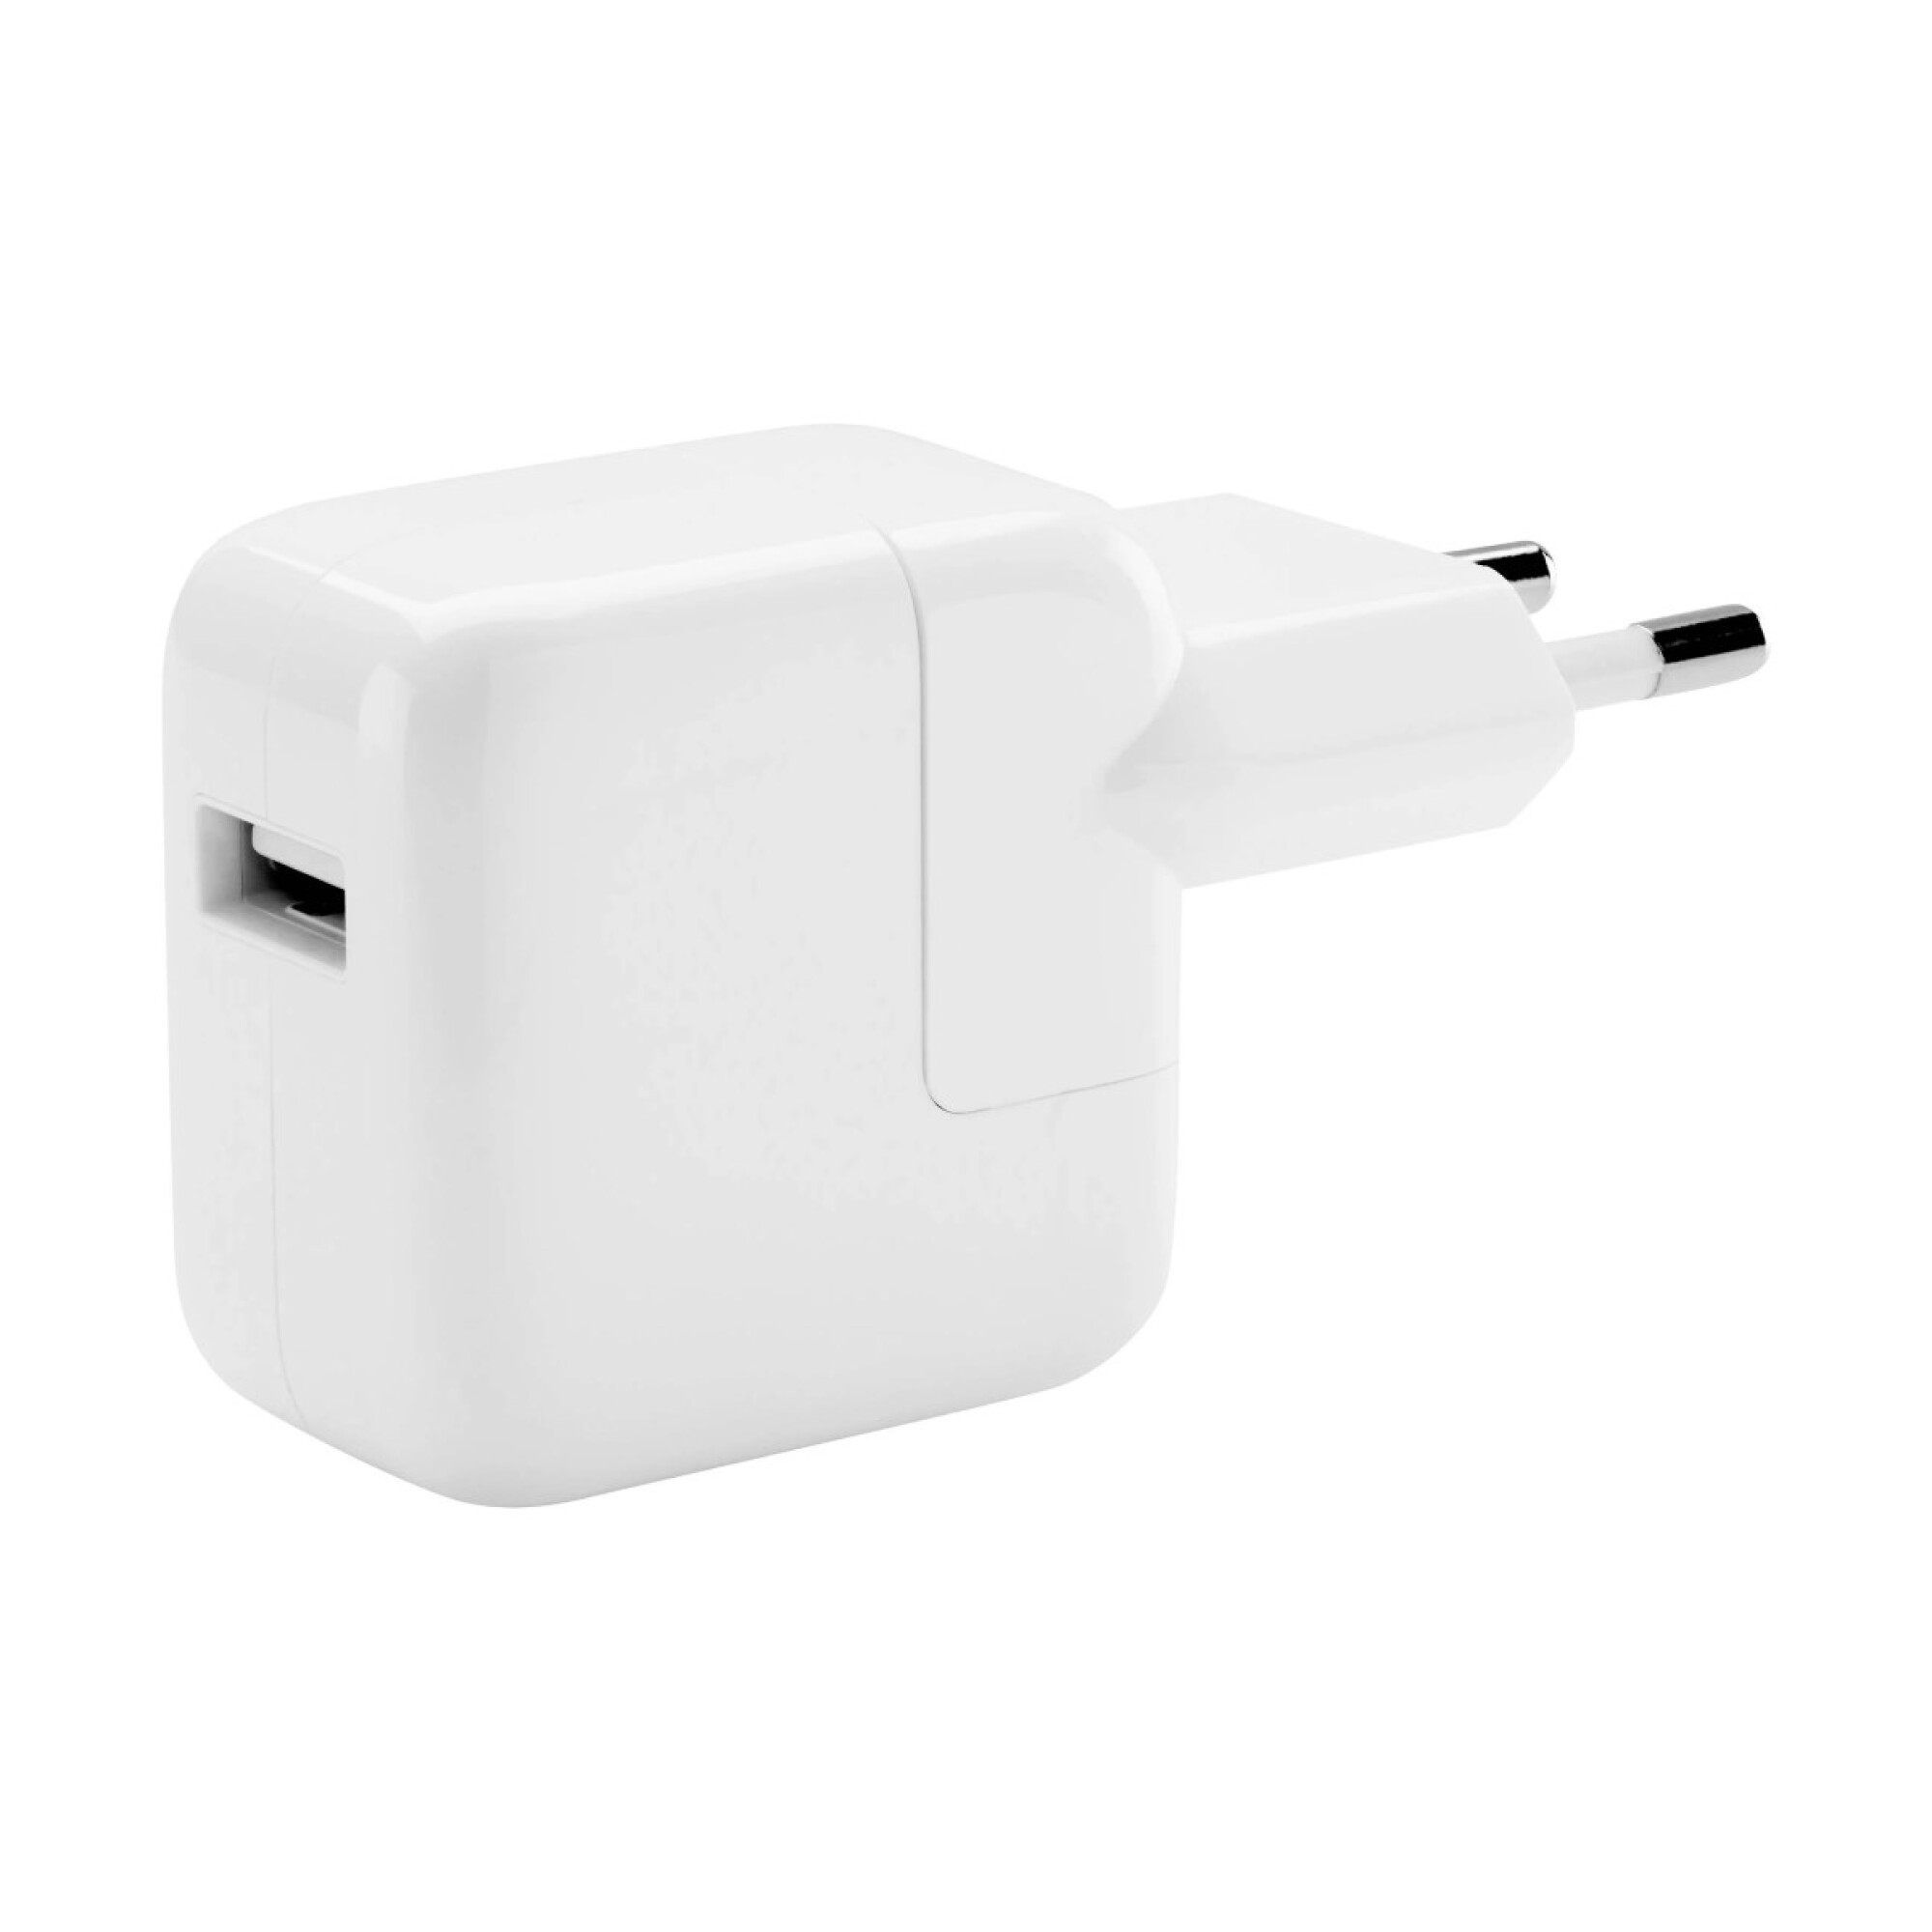 Compra Apple Cargador Original Apple para iPhone - Blanco